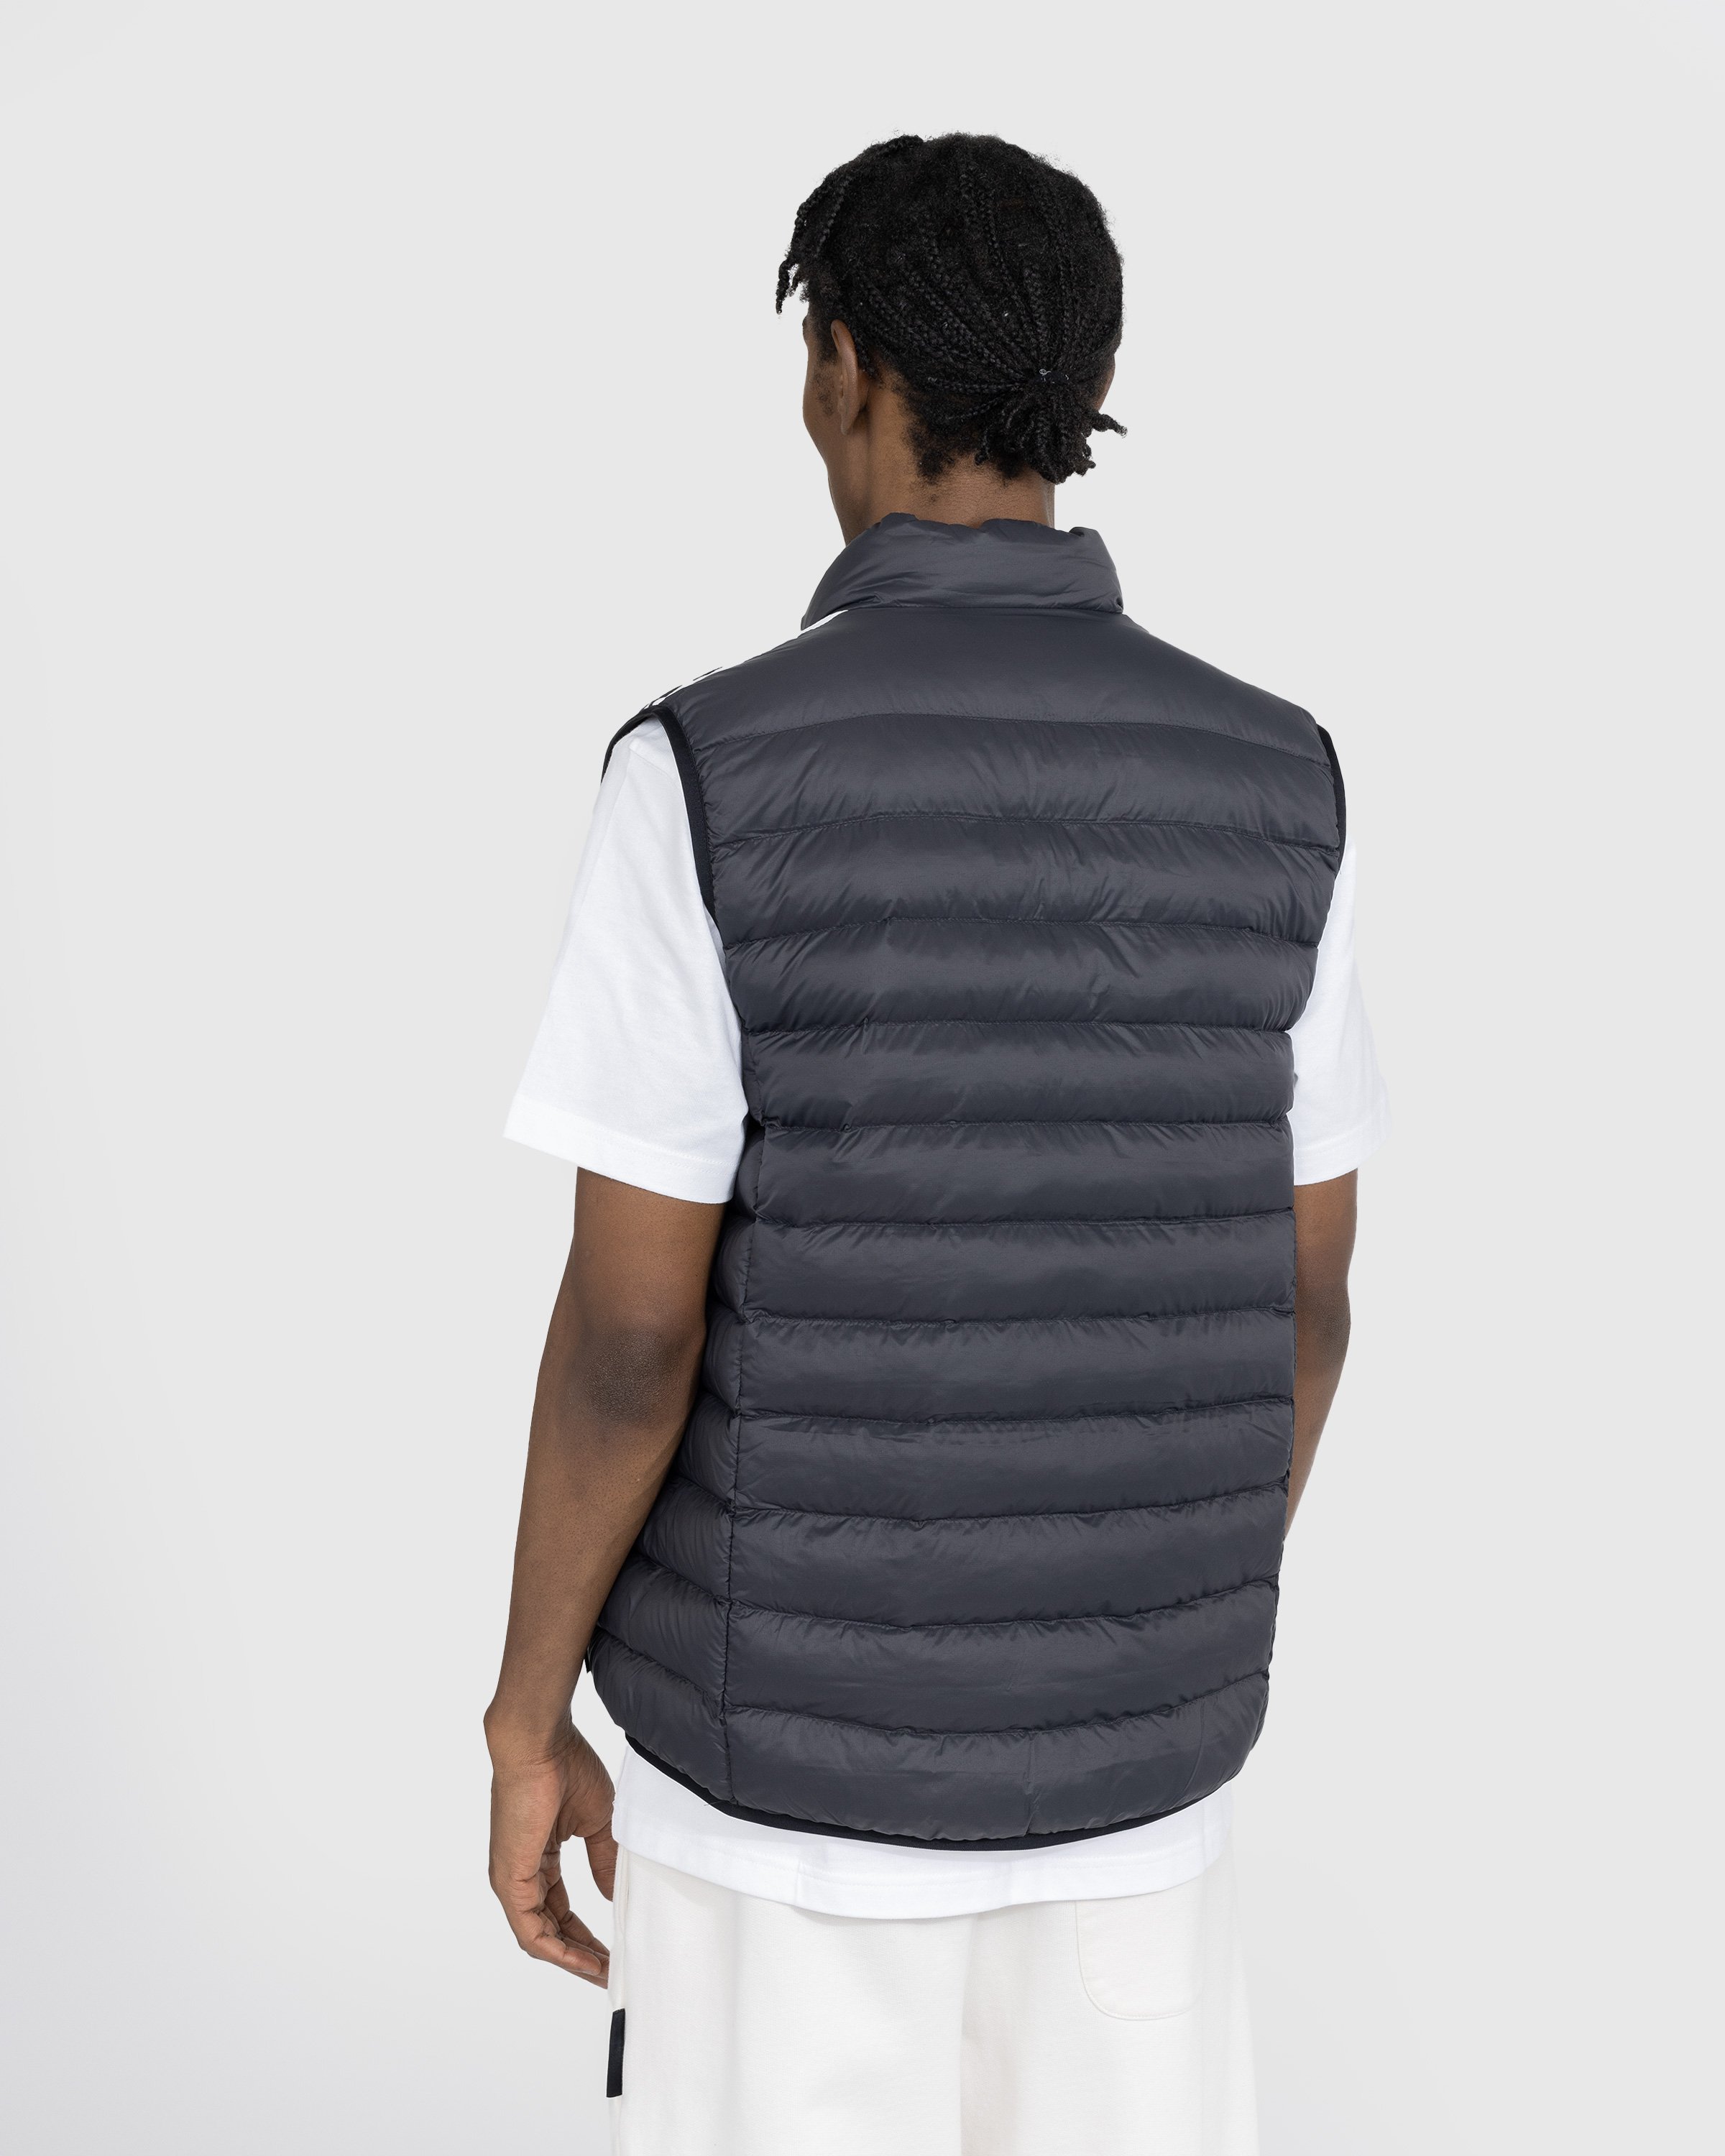 Adidas - Padded Vest Black/White - Clothing - Black - Image 3